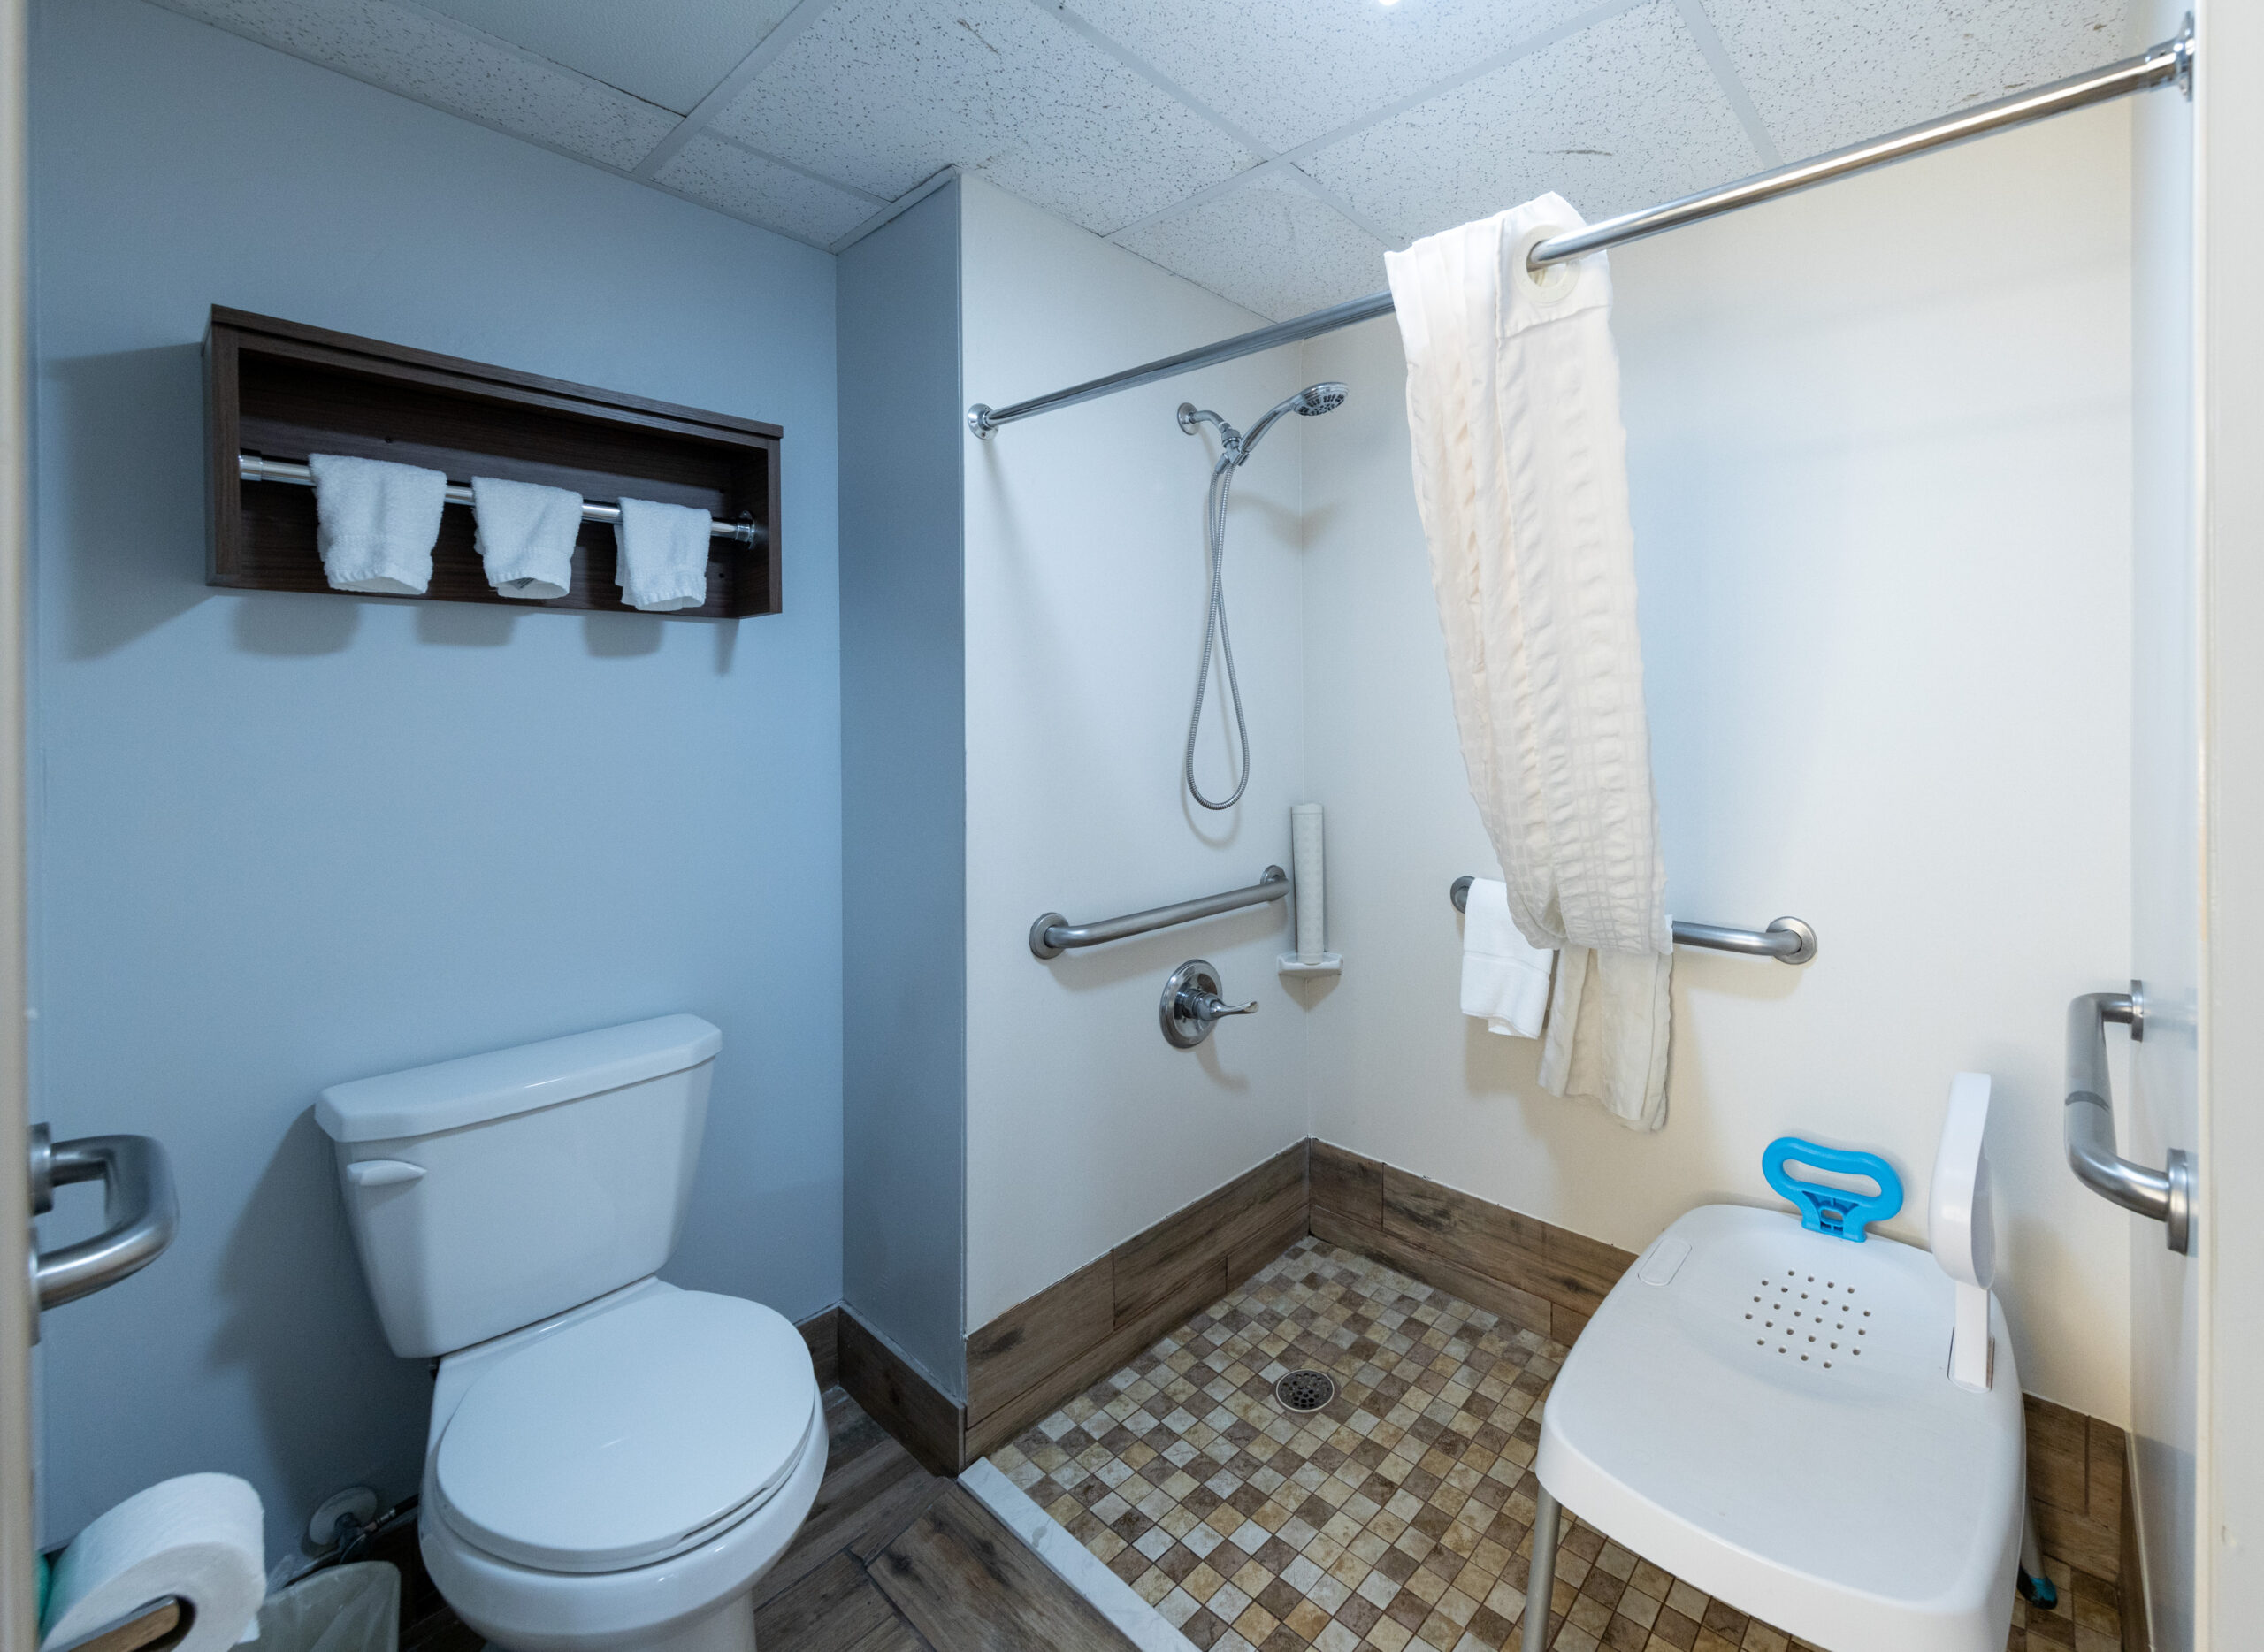 sparkling clean bathroom vanity in Pigeon Forge hotel room